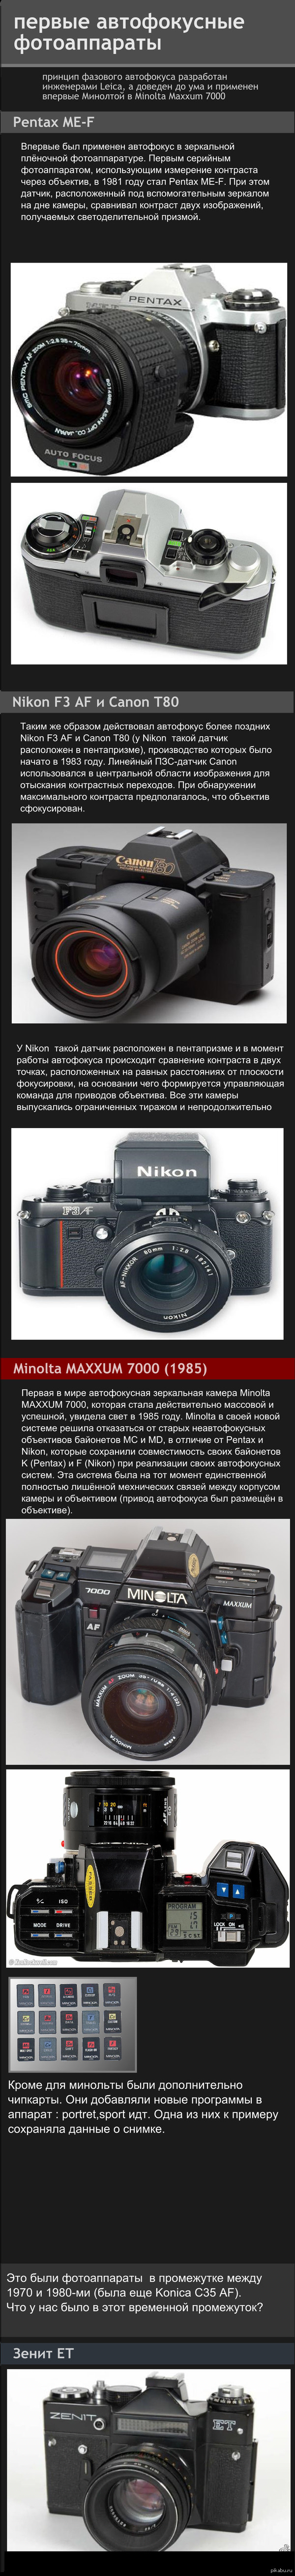     Minolta 7000 (1970-1980)   " " .